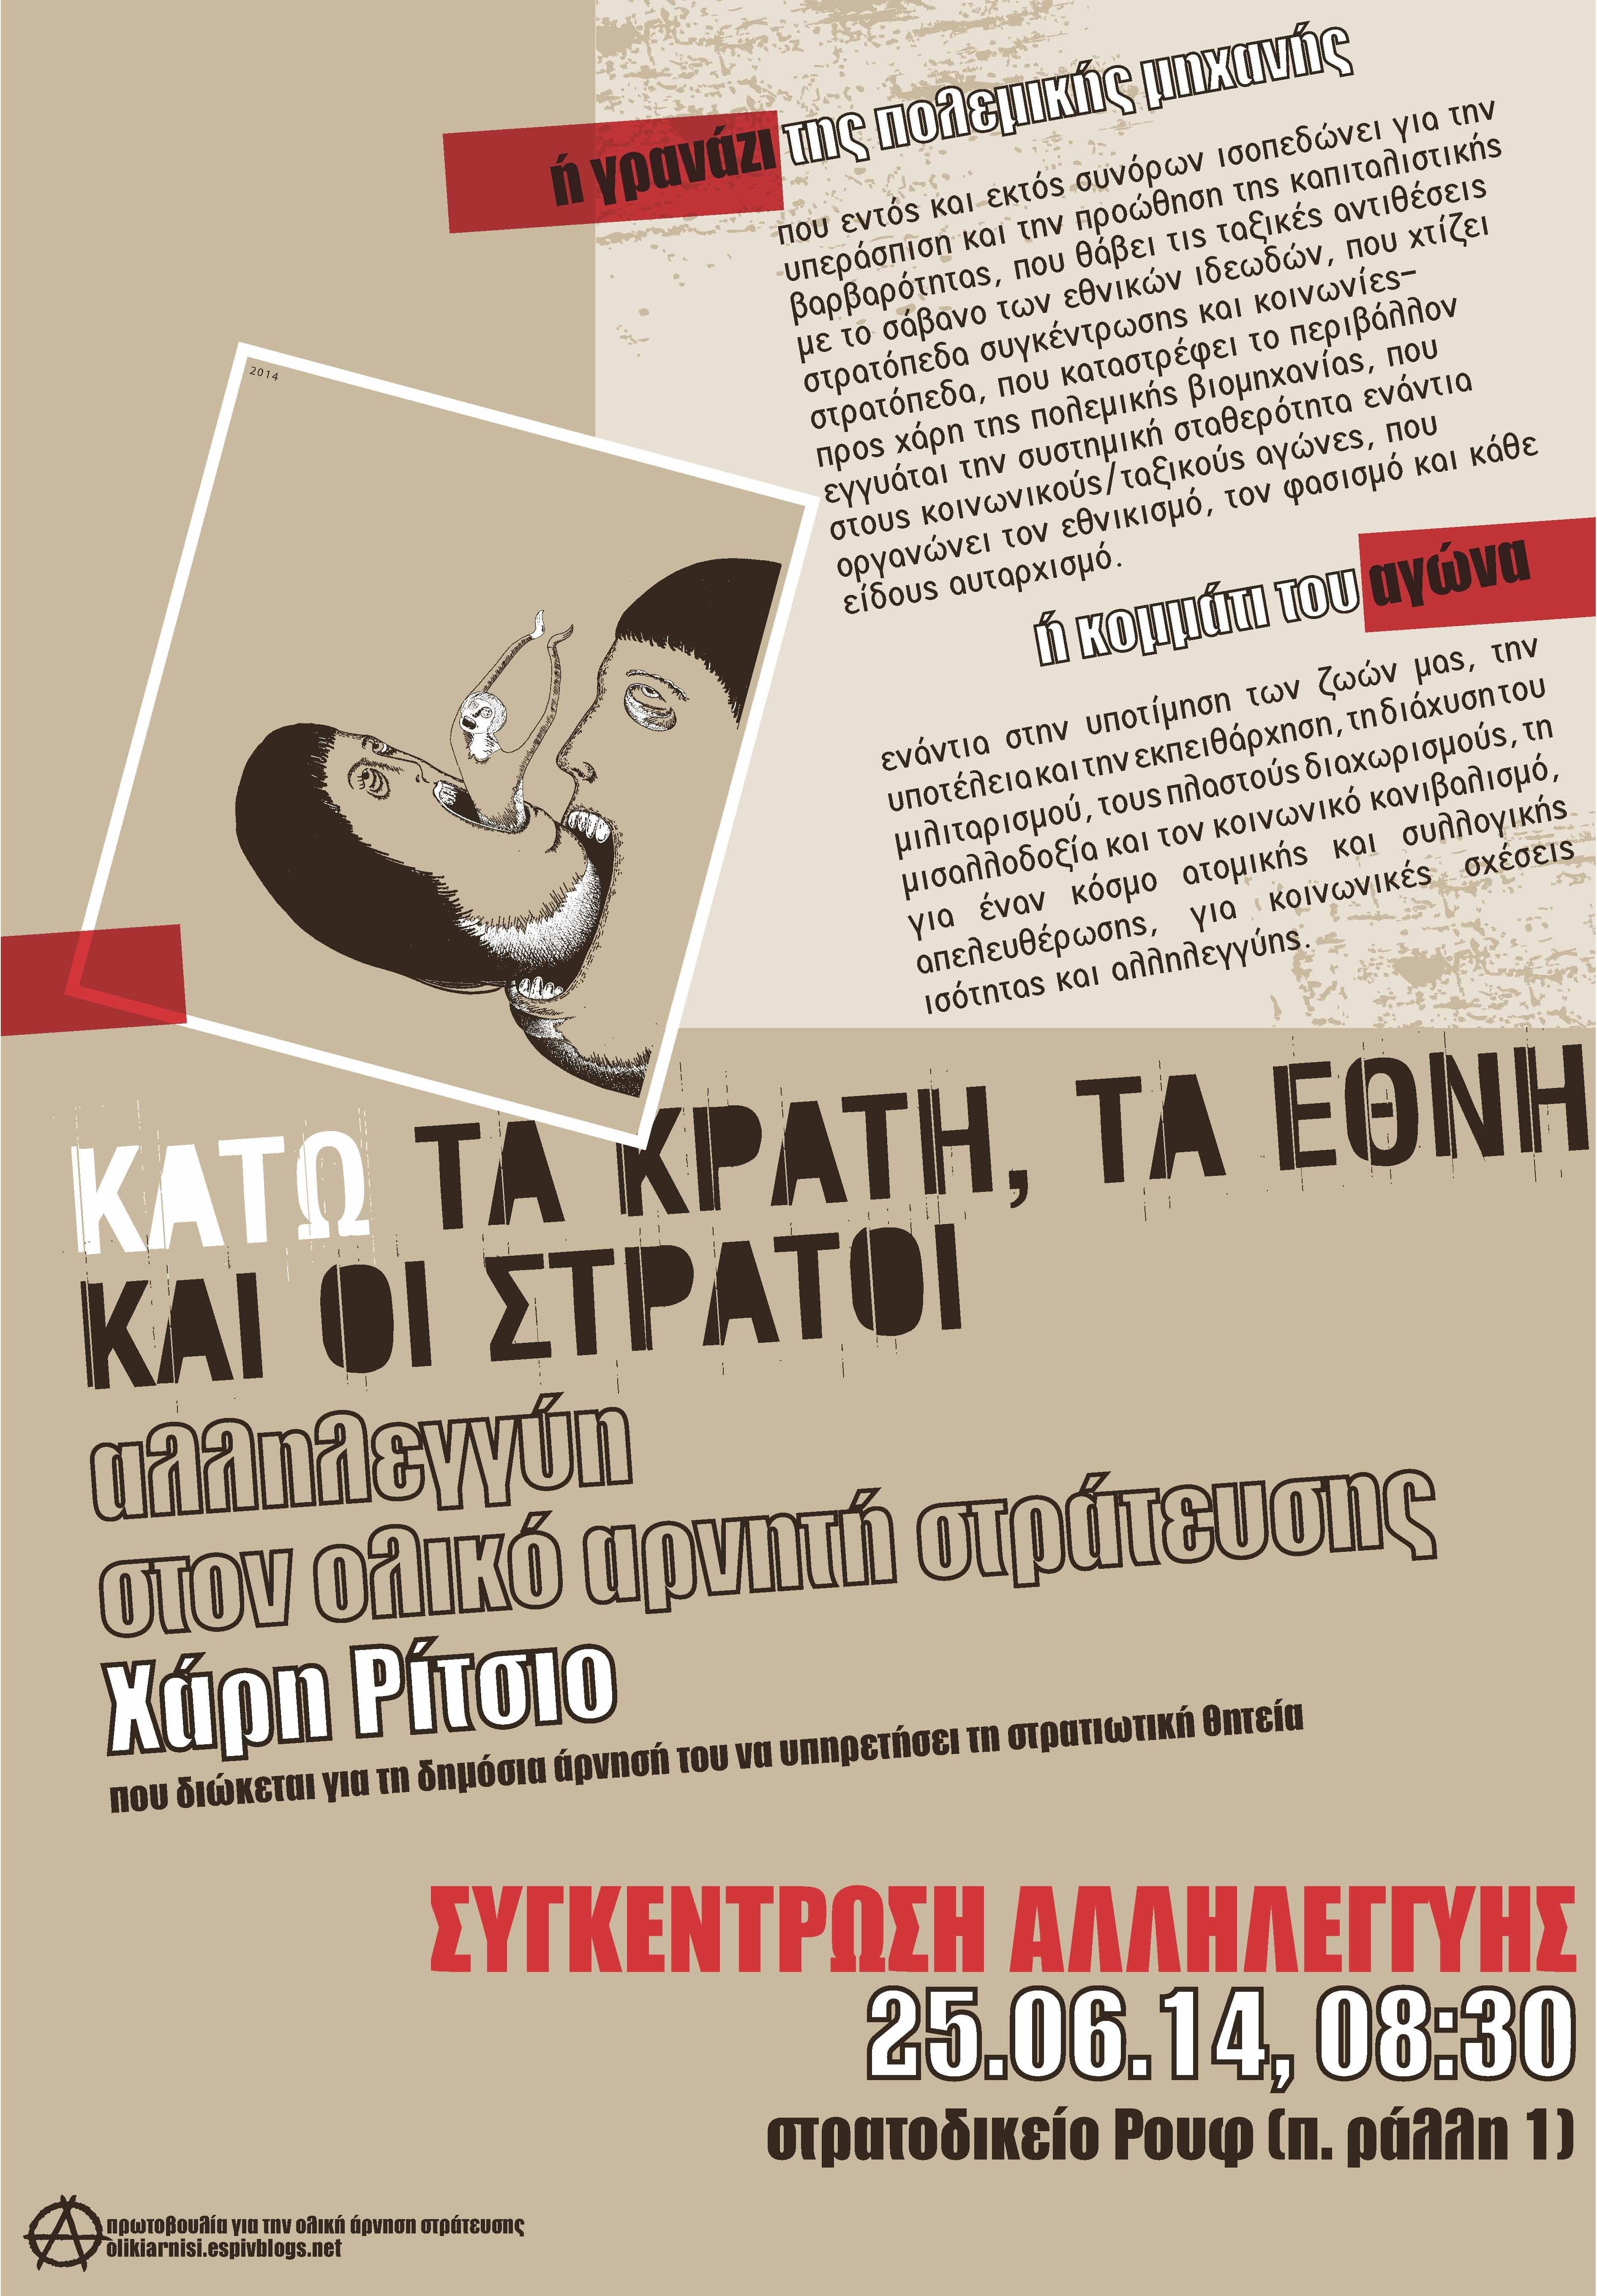 Αφίσα και κείμενο αλληλεγγύης στον ολικό αρνητή στράτευσης Χάρη Ρίτσιο